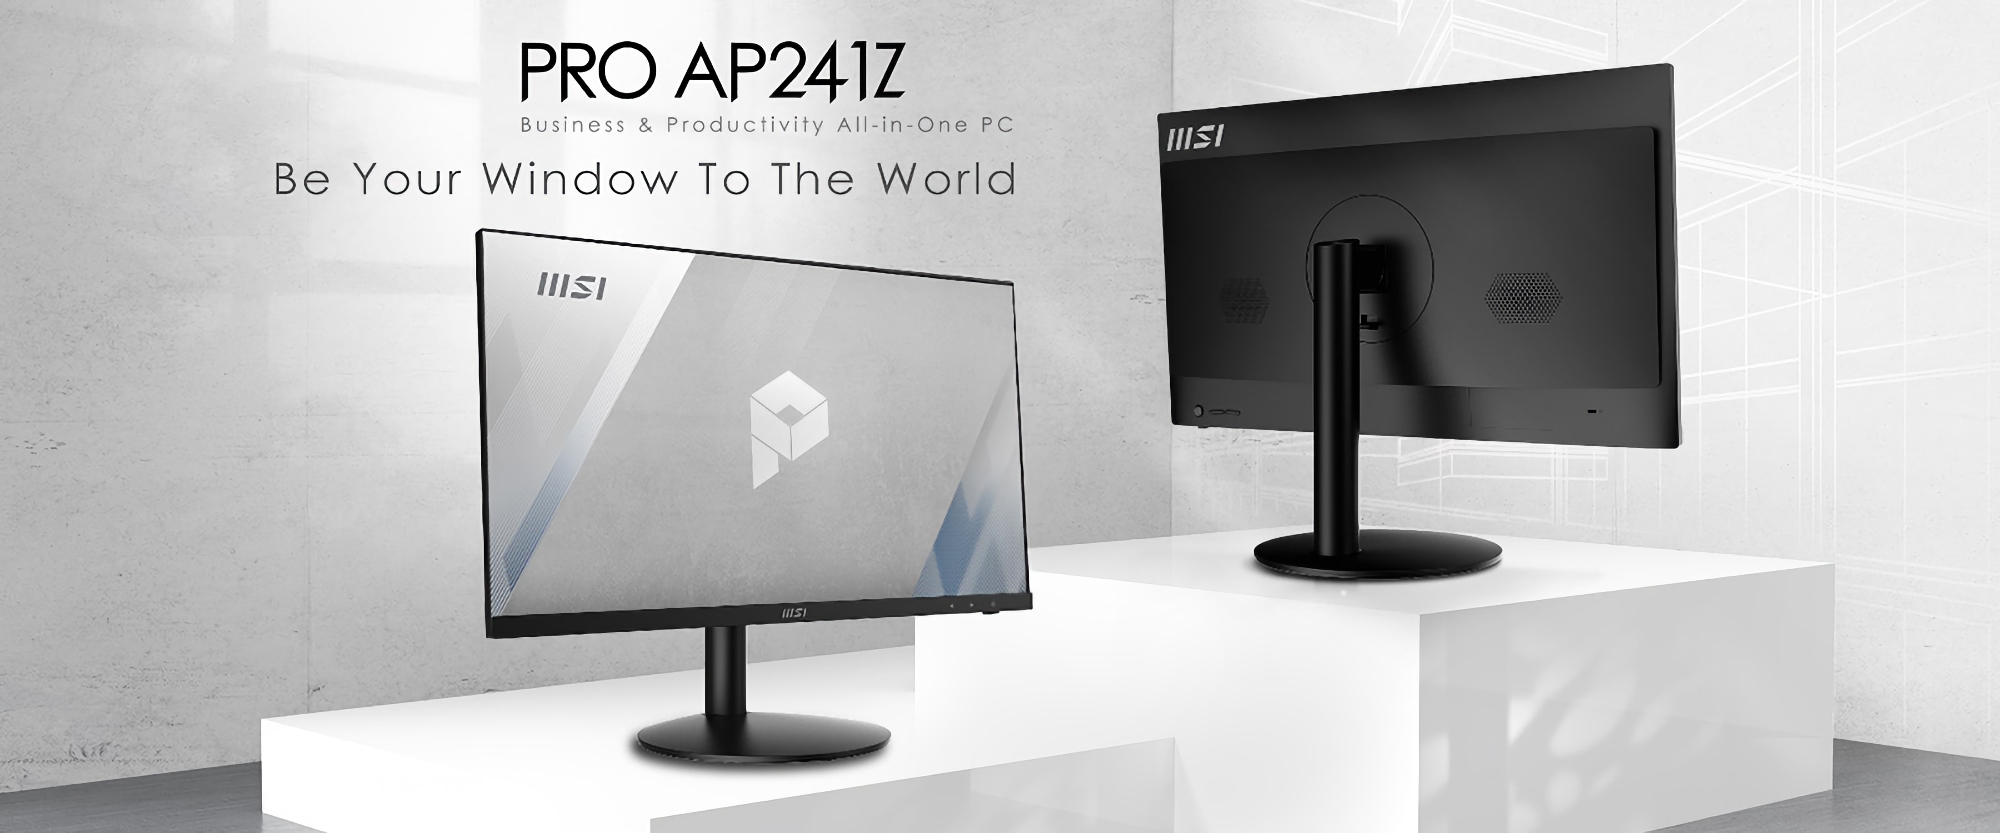 MSI ogłasza PRO AP241Z: 24-calowy All-in-One z procesorem AMD Ryzen 7 5700G i wbudowanym systemem Windows 11